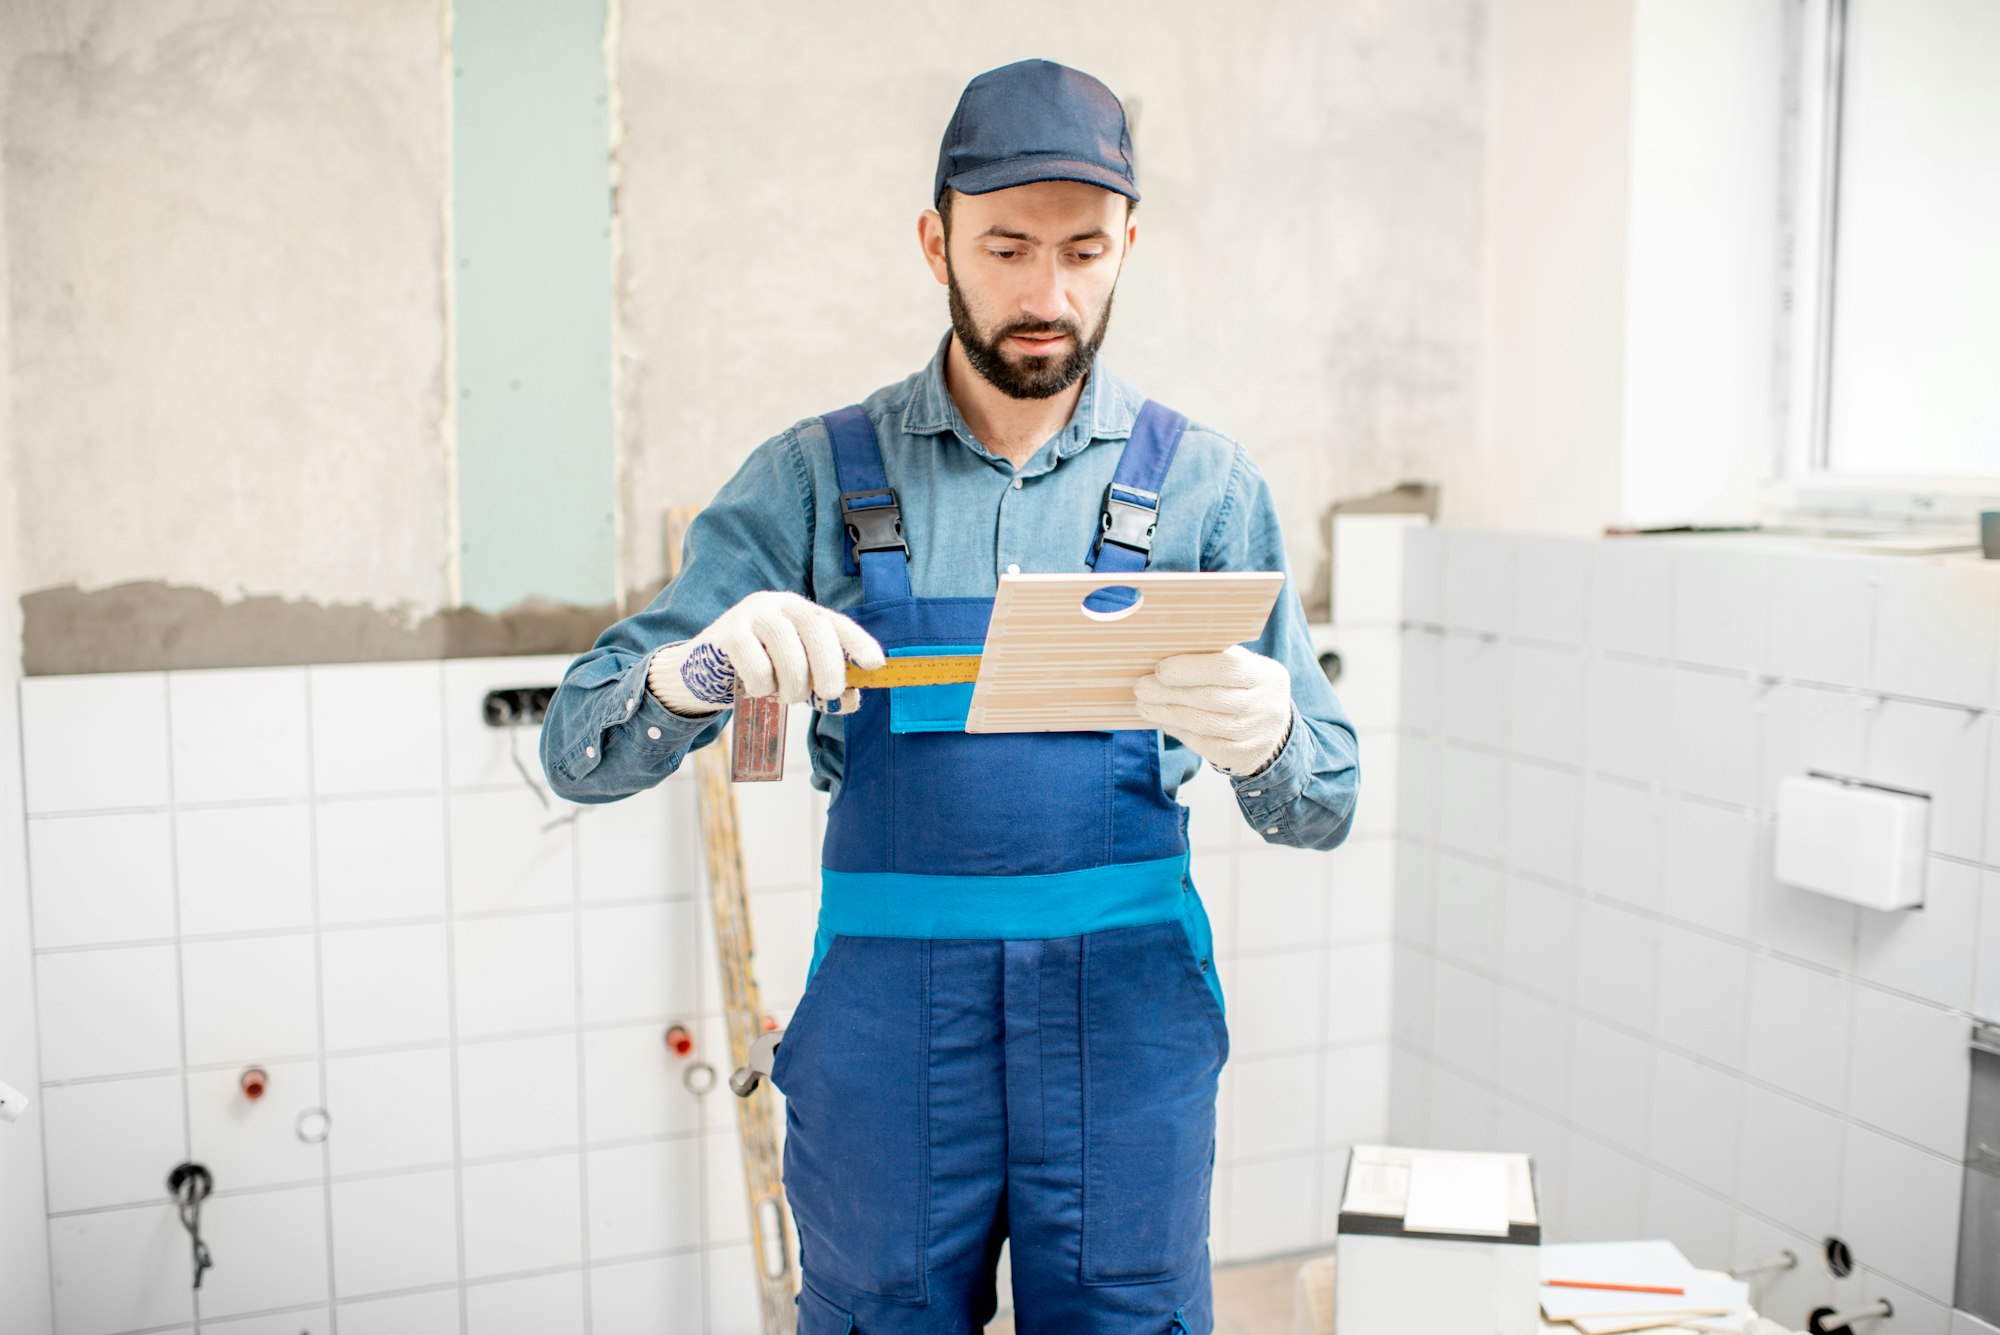 Workman putting tiles indoors